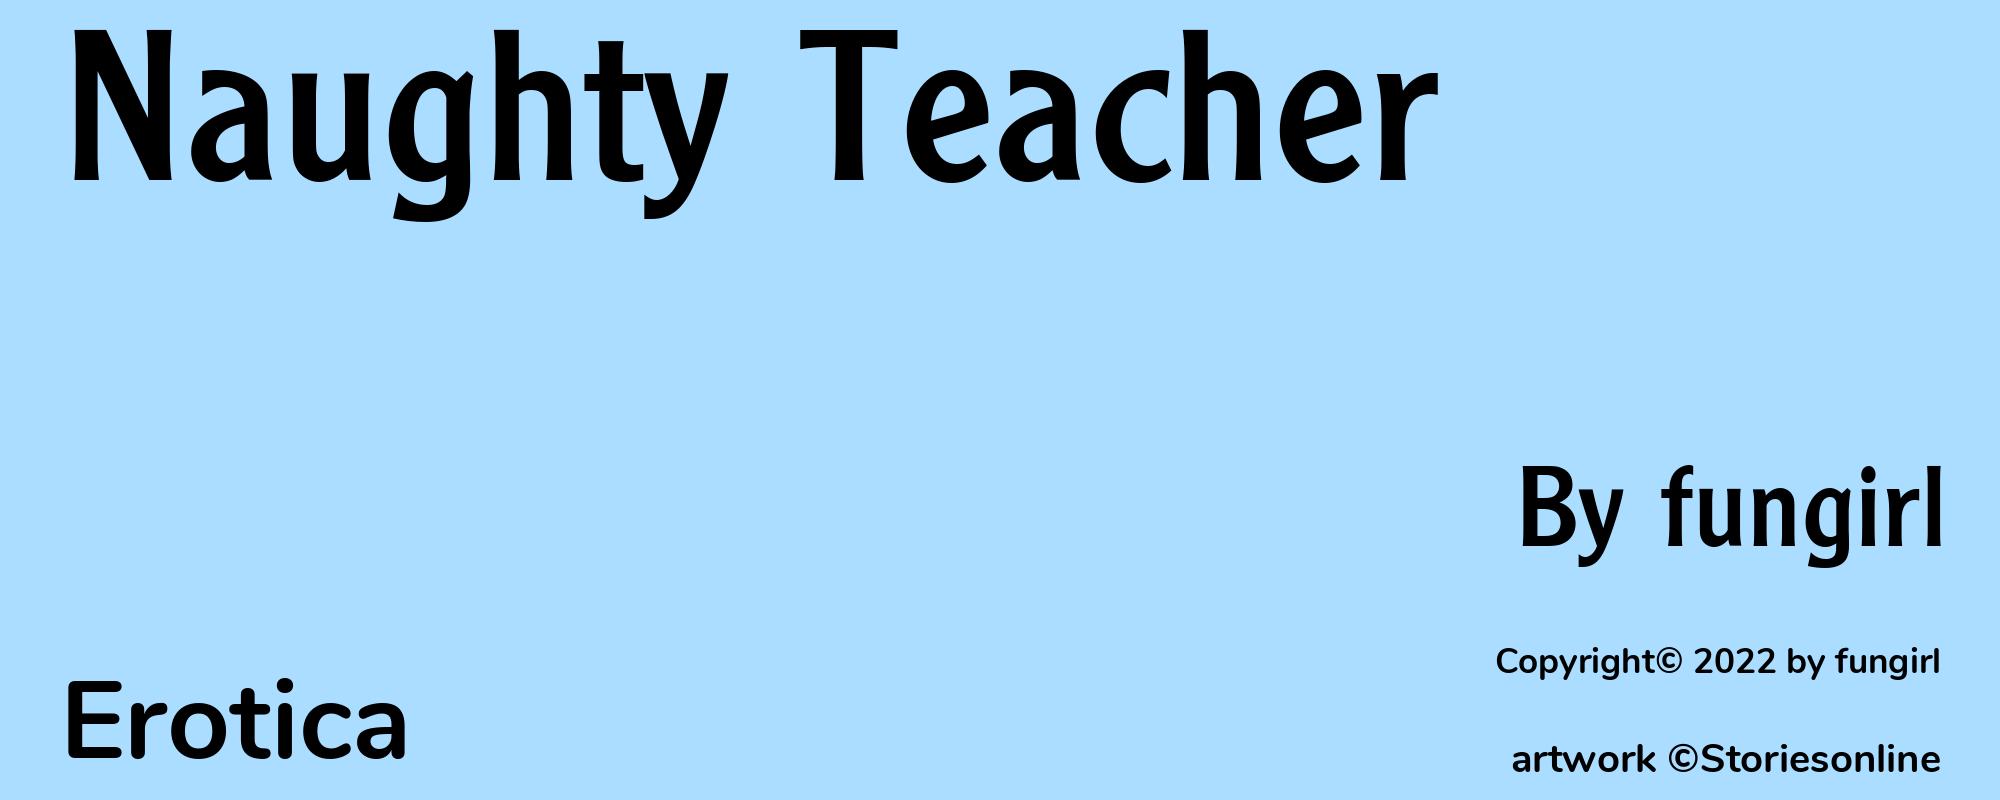 Naughty Teacher - Cover